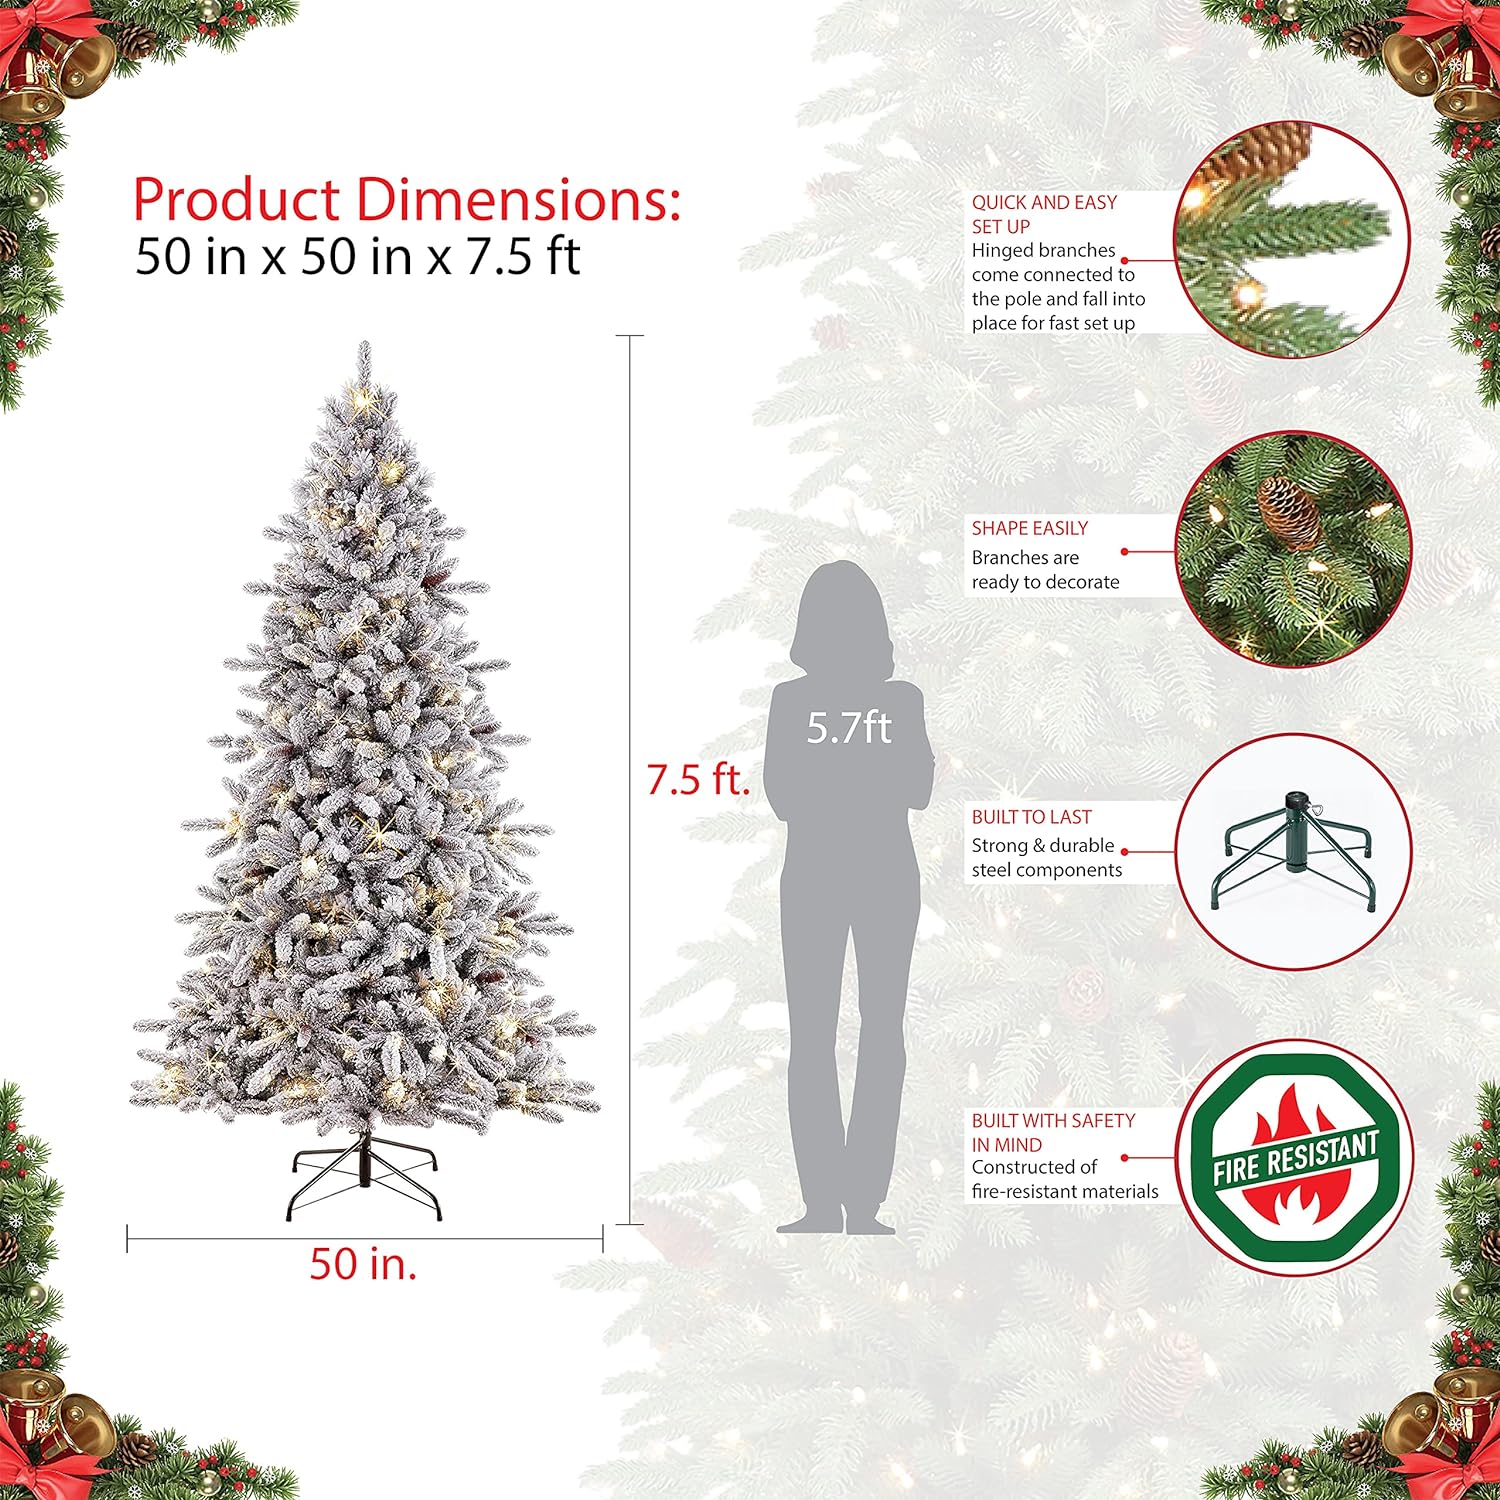 Puleo International Pre-Lit 7.5 ft. Flocked Bennington Fir Artificial Christmas Tree - $250